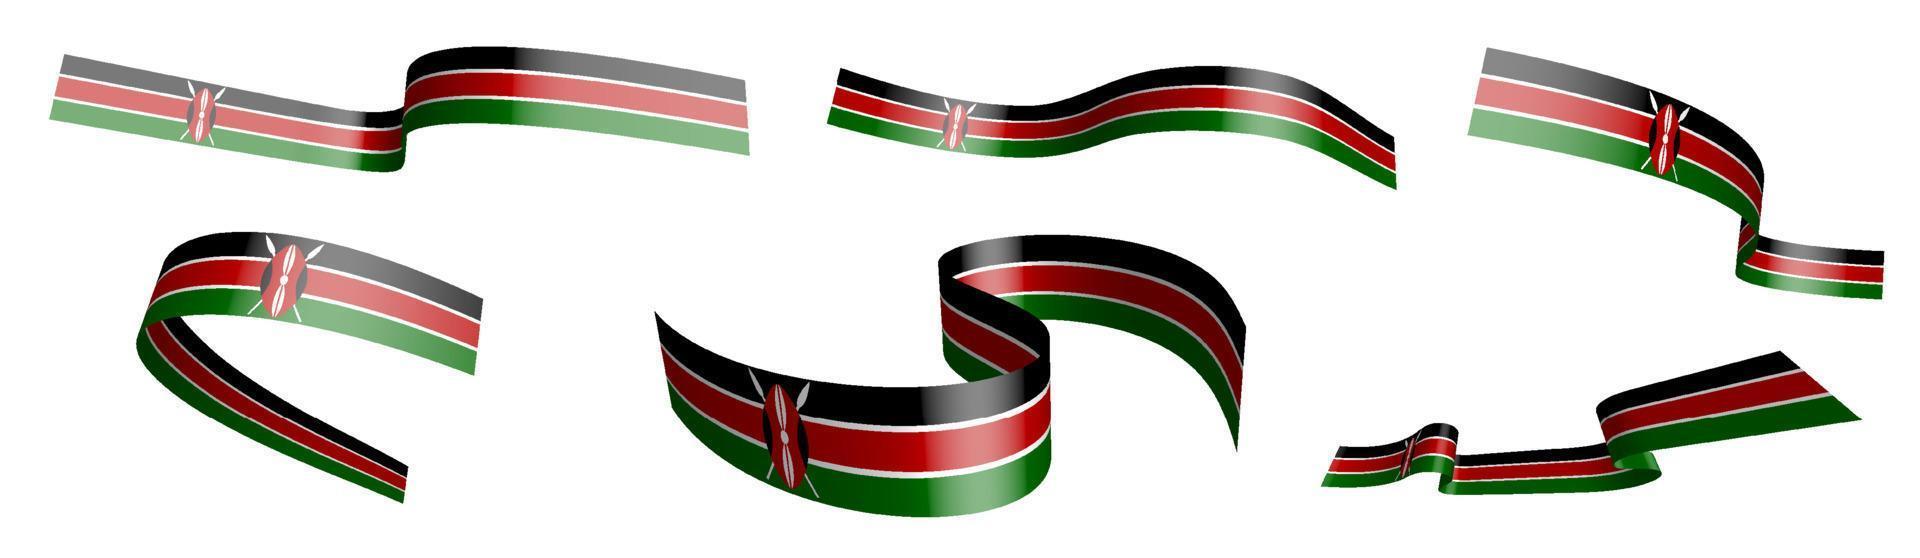 conjunto de cintas de vacaciones. bandera de kenia ondeando en el viento. separación en capas superior e inferior. elemento de diseño vector sobre fondo blanco